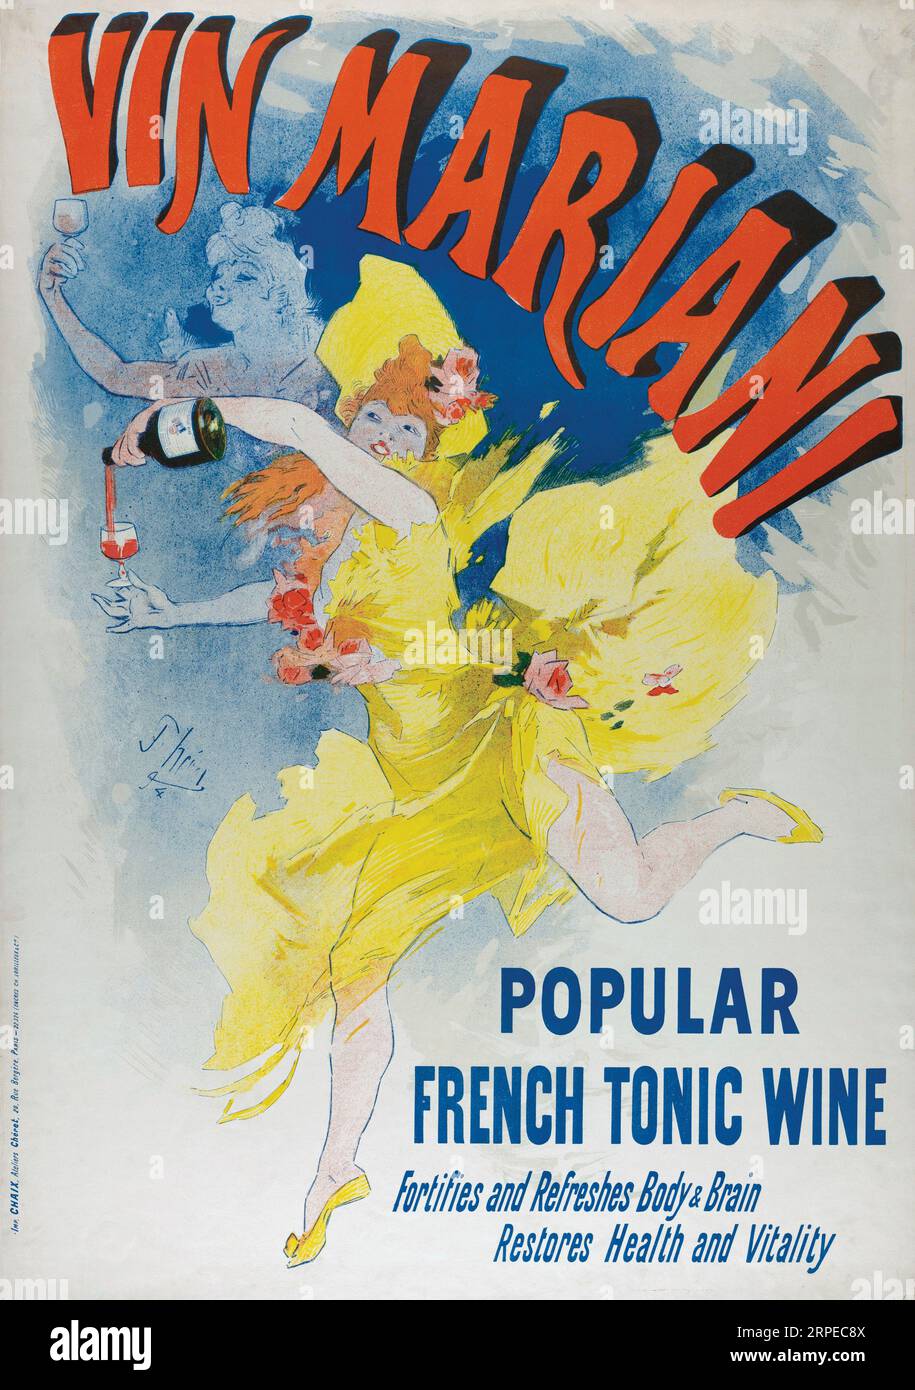 Affiche en anglais pour vin Mariani, 1894. D'après une œuvre de Jules Cheret. Vin Mariani était un vin de coca français et un médicament breveté. Il combinait le vin avec la cocaïne et était largement exporté. Banque D'Images